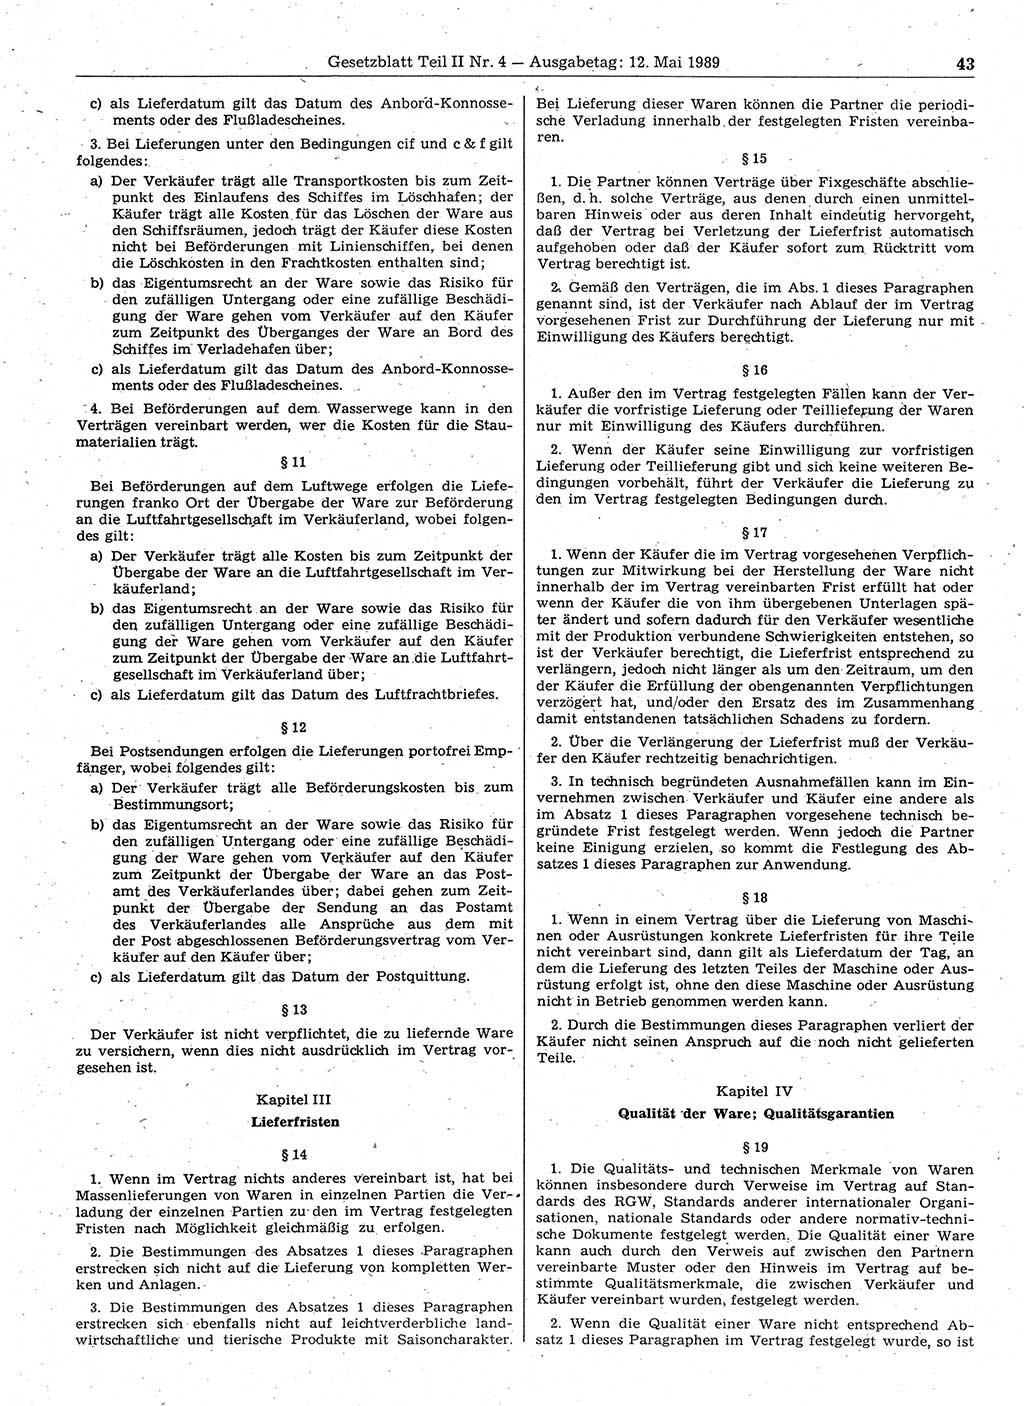 Gesetzblatt (GBl.) der Deutschen Demokratischen Republik (DDR) Teil ⅠⅠ 1989, Seite 43 (GBl. DDR ⅠⅠ 1989, S. 43)